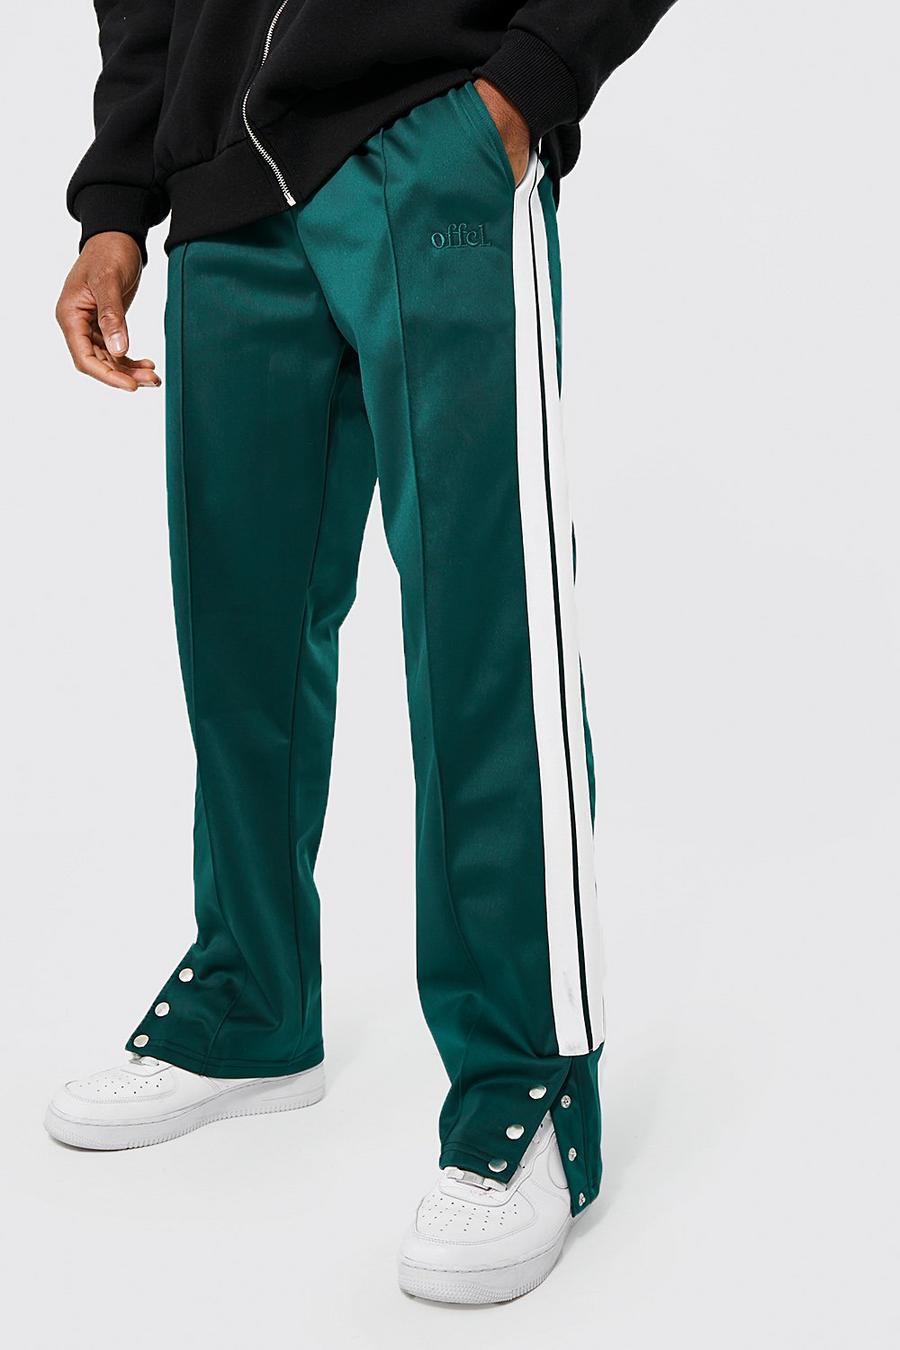 Pantaloni tuta taglio rilassato in tricot con bottoni automatici e scritta Offcl, Foresta verde